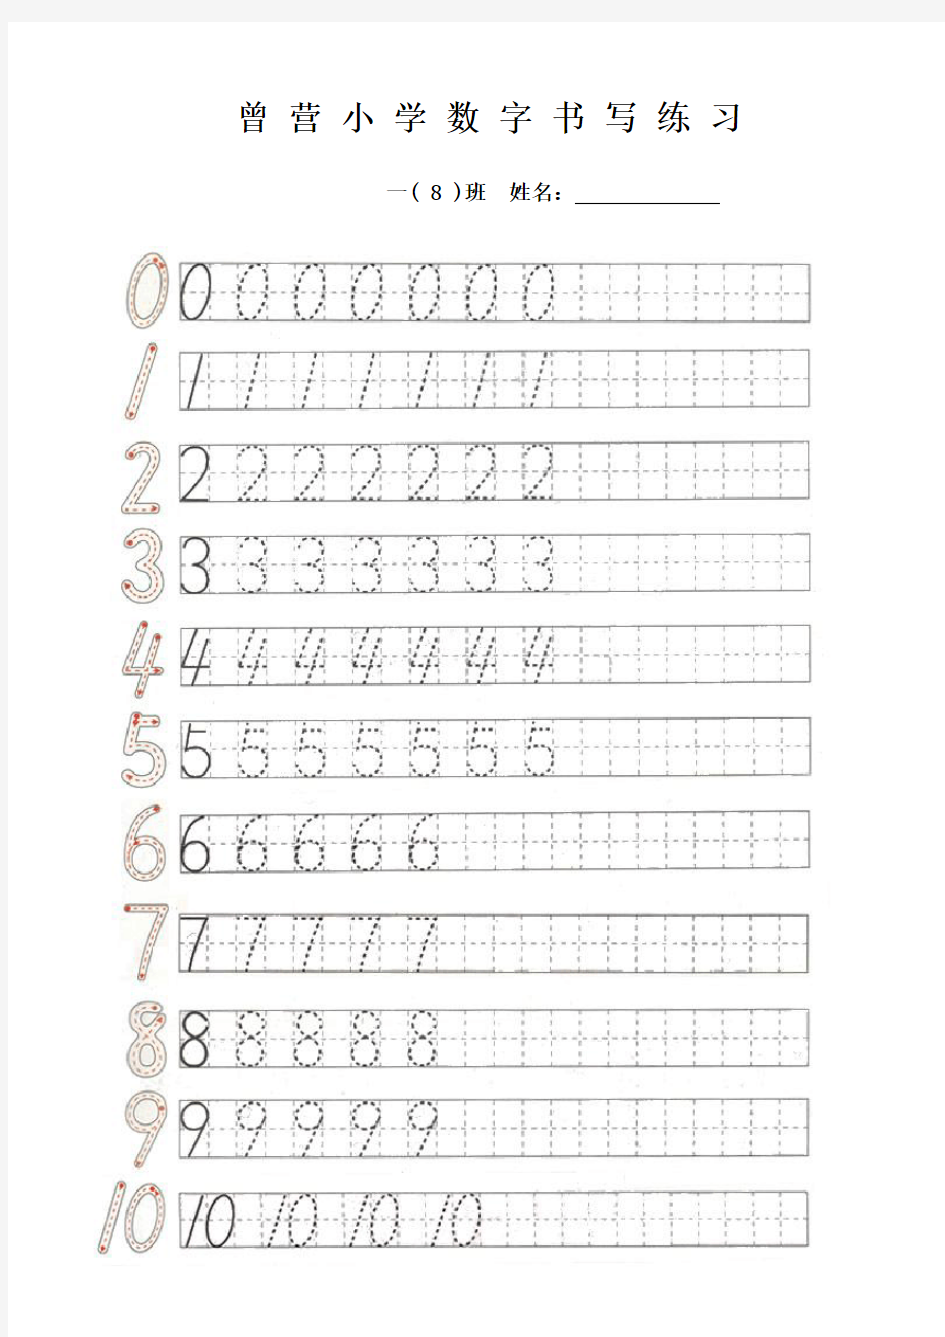 一年级 0-10数字书写练习表 (日字格,田字格)